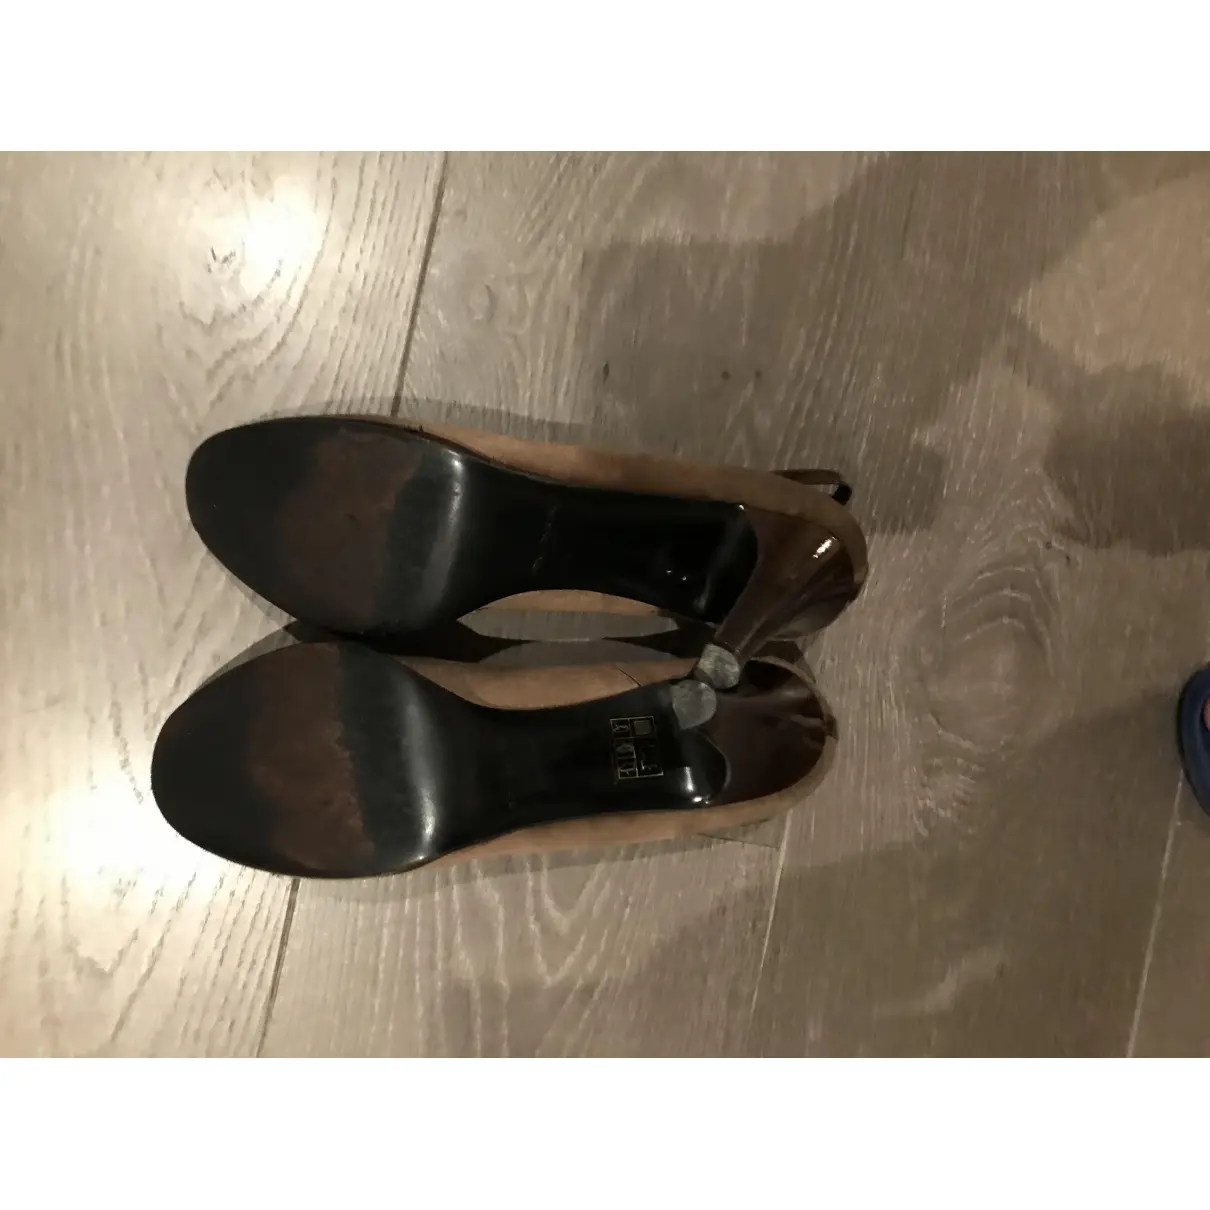 Patent leather heels Sonia Rykiel - Vintage